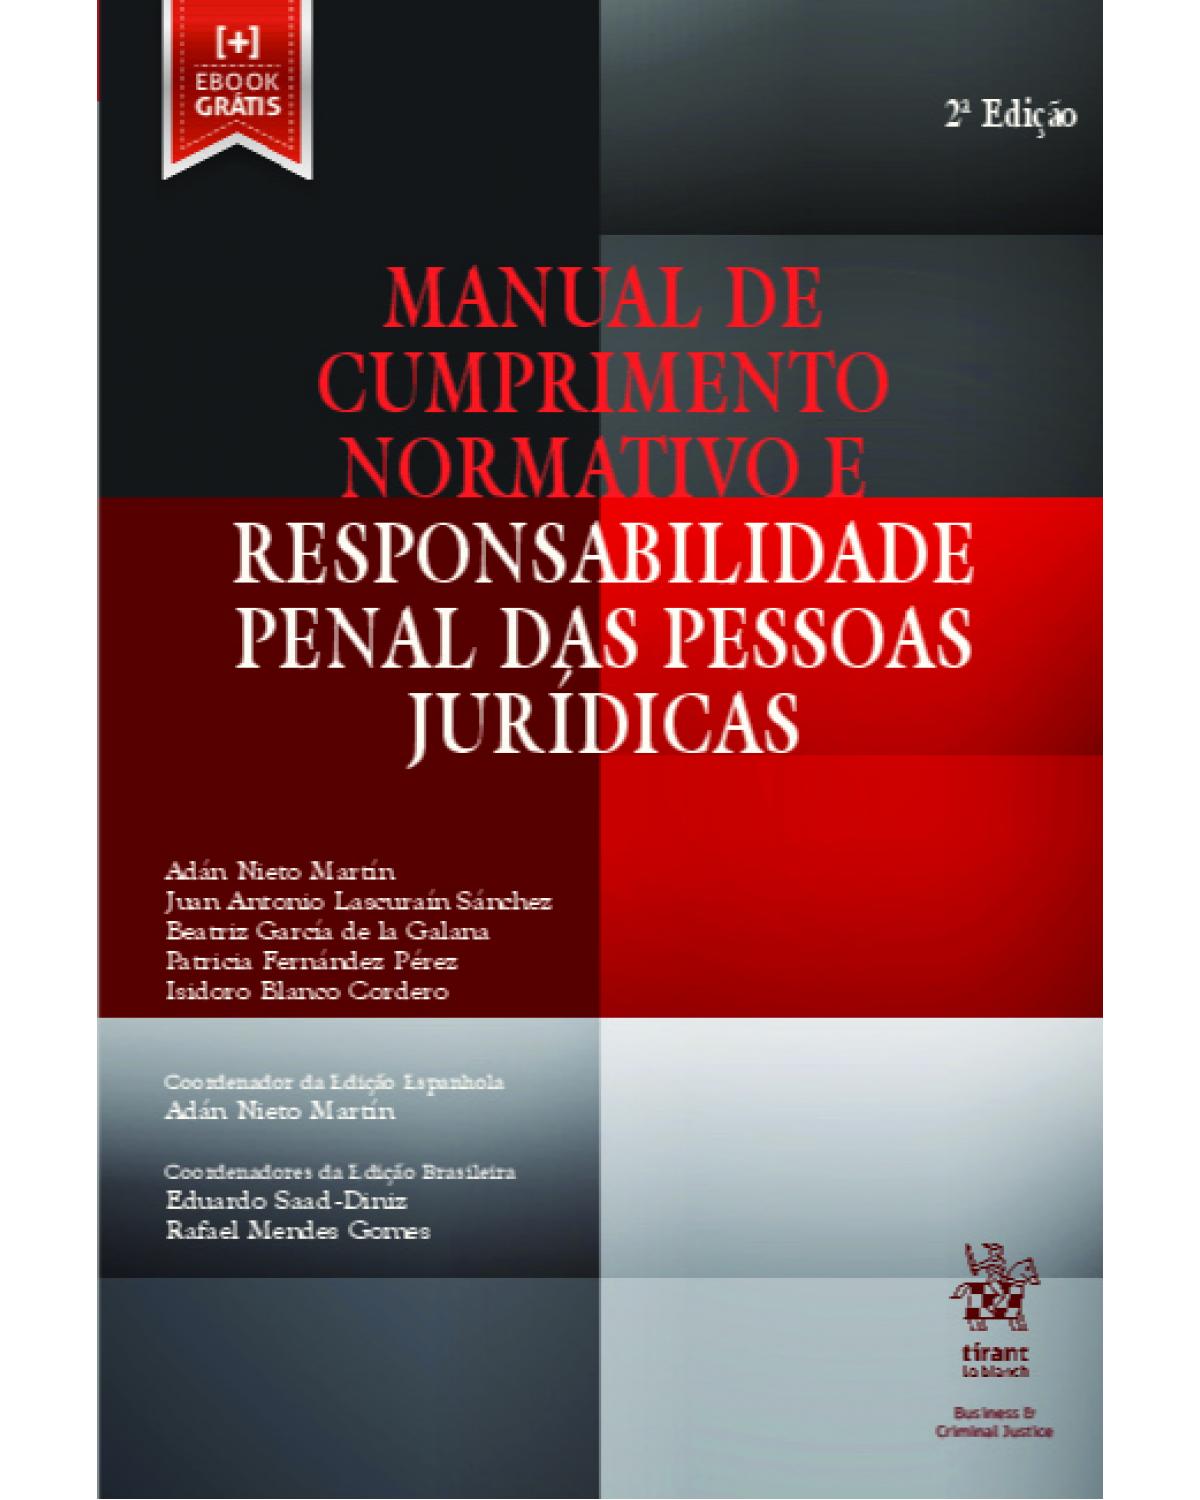 Manual de cumprimento normativo e responsabilidade penal das pessoas jurídicas - 2ª Edição | 2019